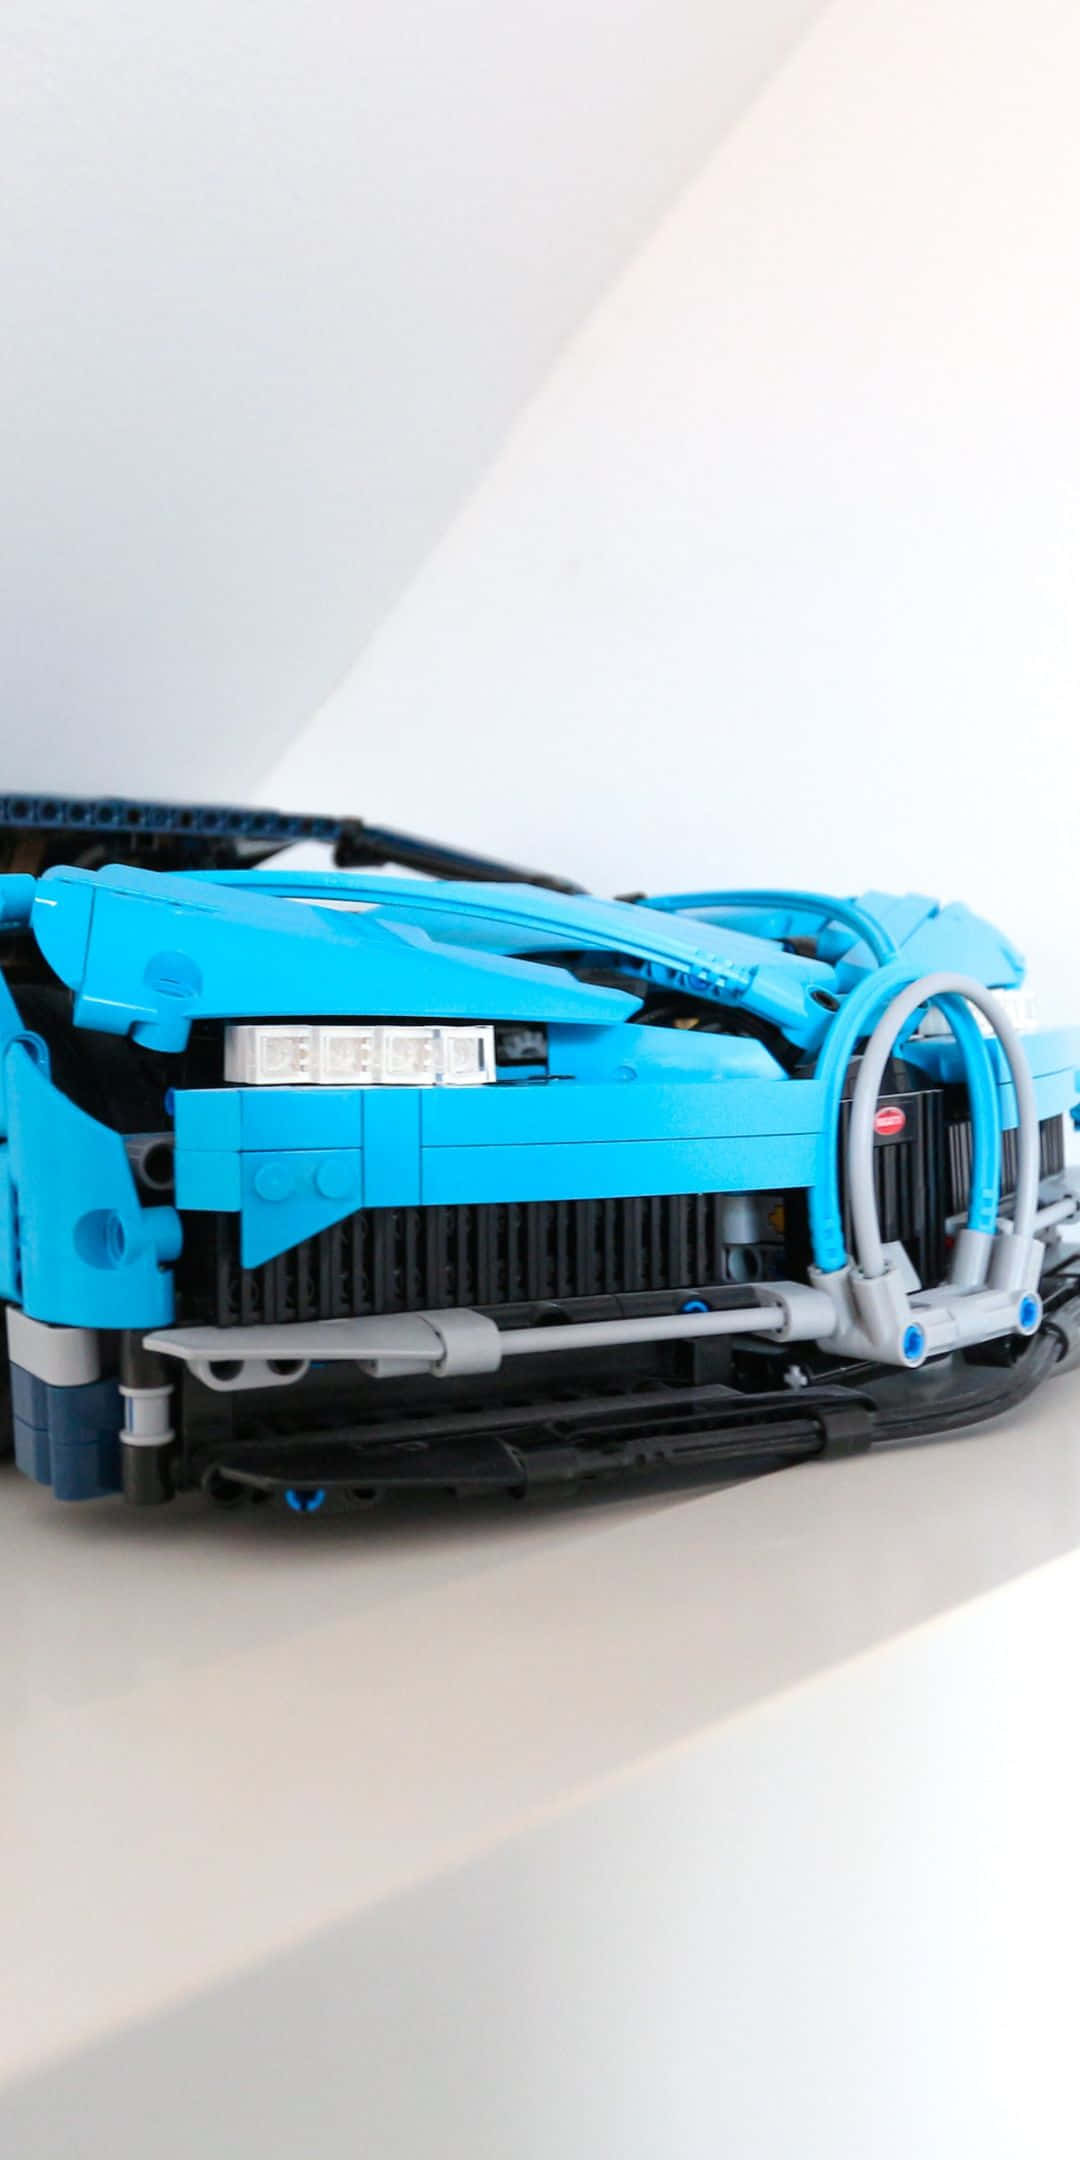 Fondode Pantalla Lego Technic Chiron Pixel 3 Bugatti.